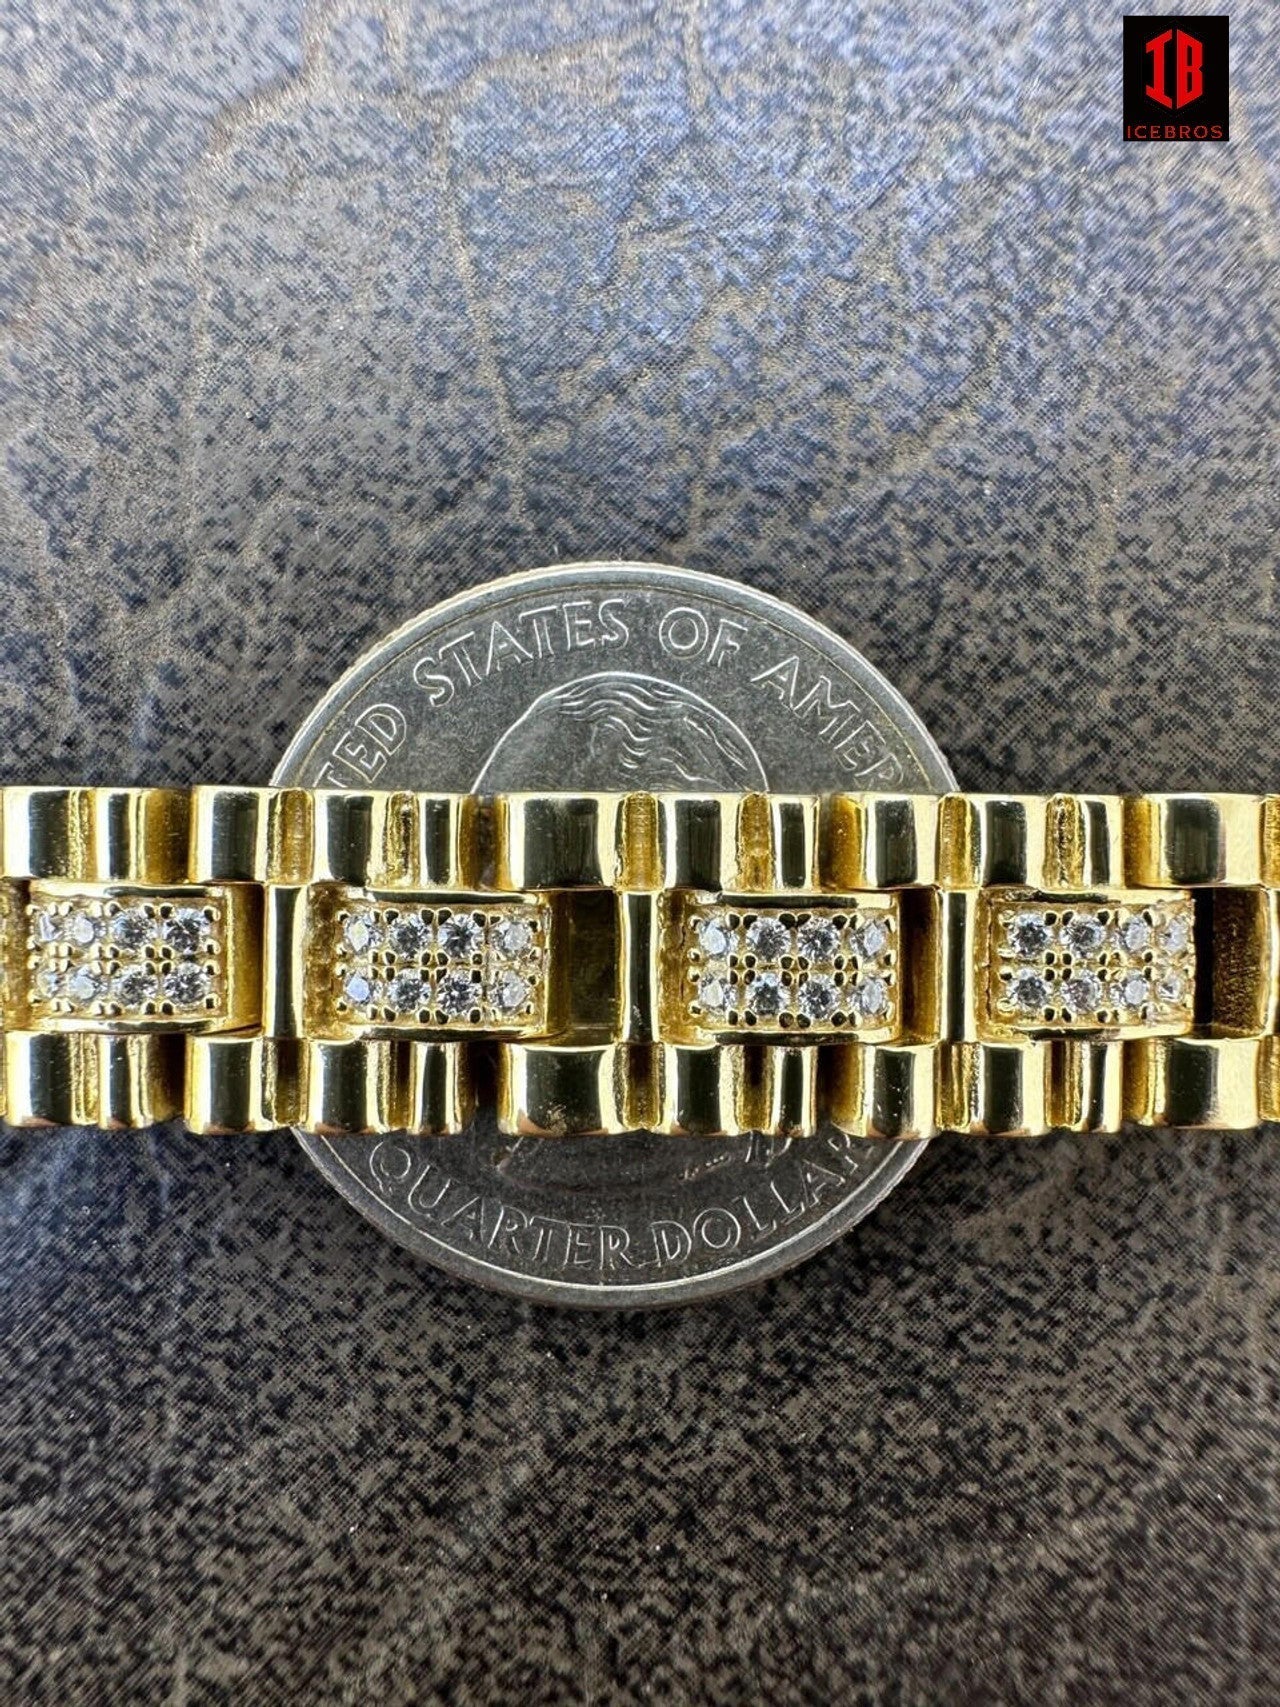 MOISSANITE Men's 10mm ICEBROS Presidential Bracelet Real 925 Sterling Silver PASSES TESTER